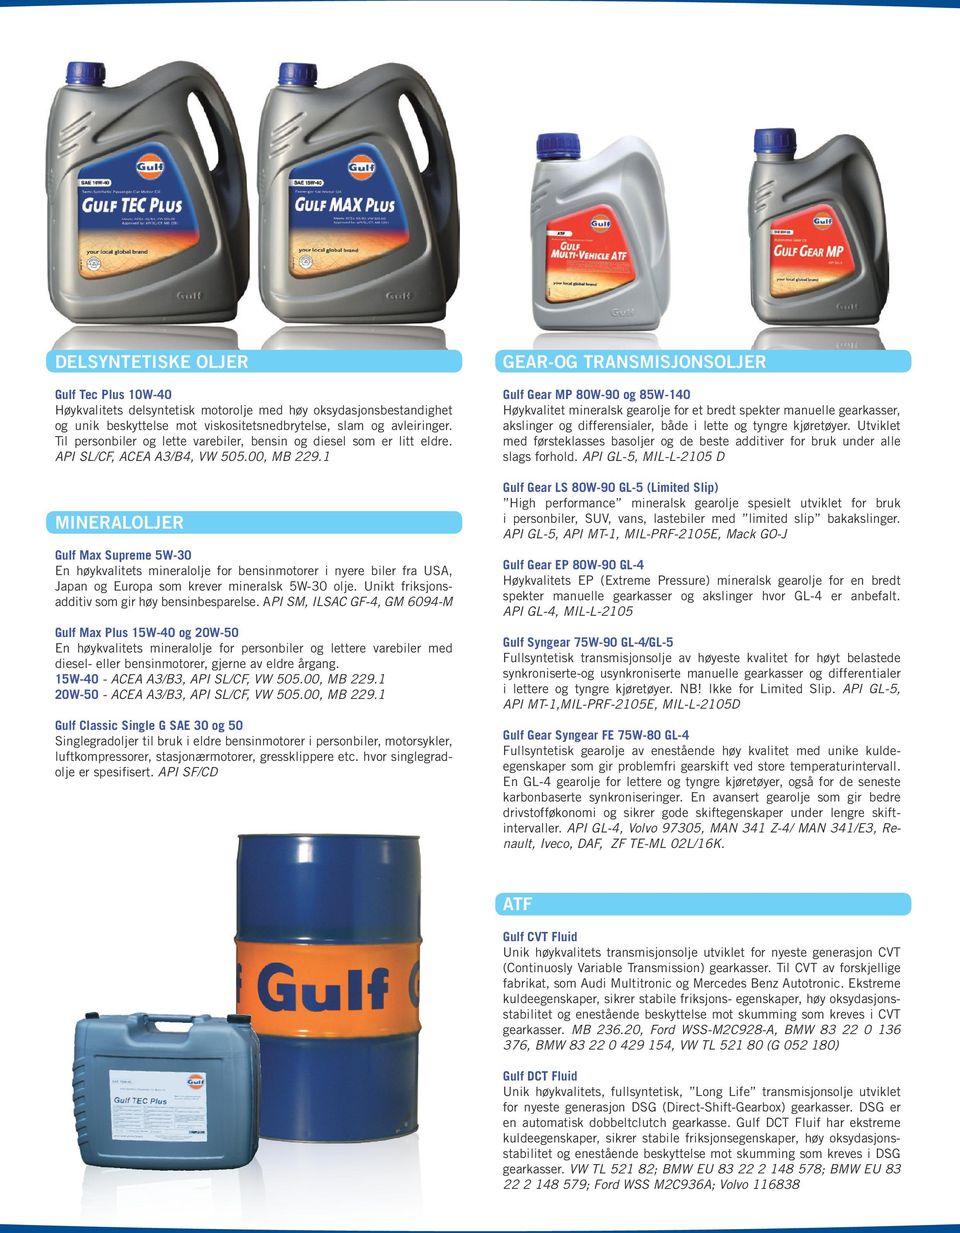 1 MINERALOLJER Gulf Max Supreme 5W-30 En høykvalitets mineralolje for bensinmotorer i nyere biler fra USA, Japan og Europa som krever mineralsk 5W-30 olje.